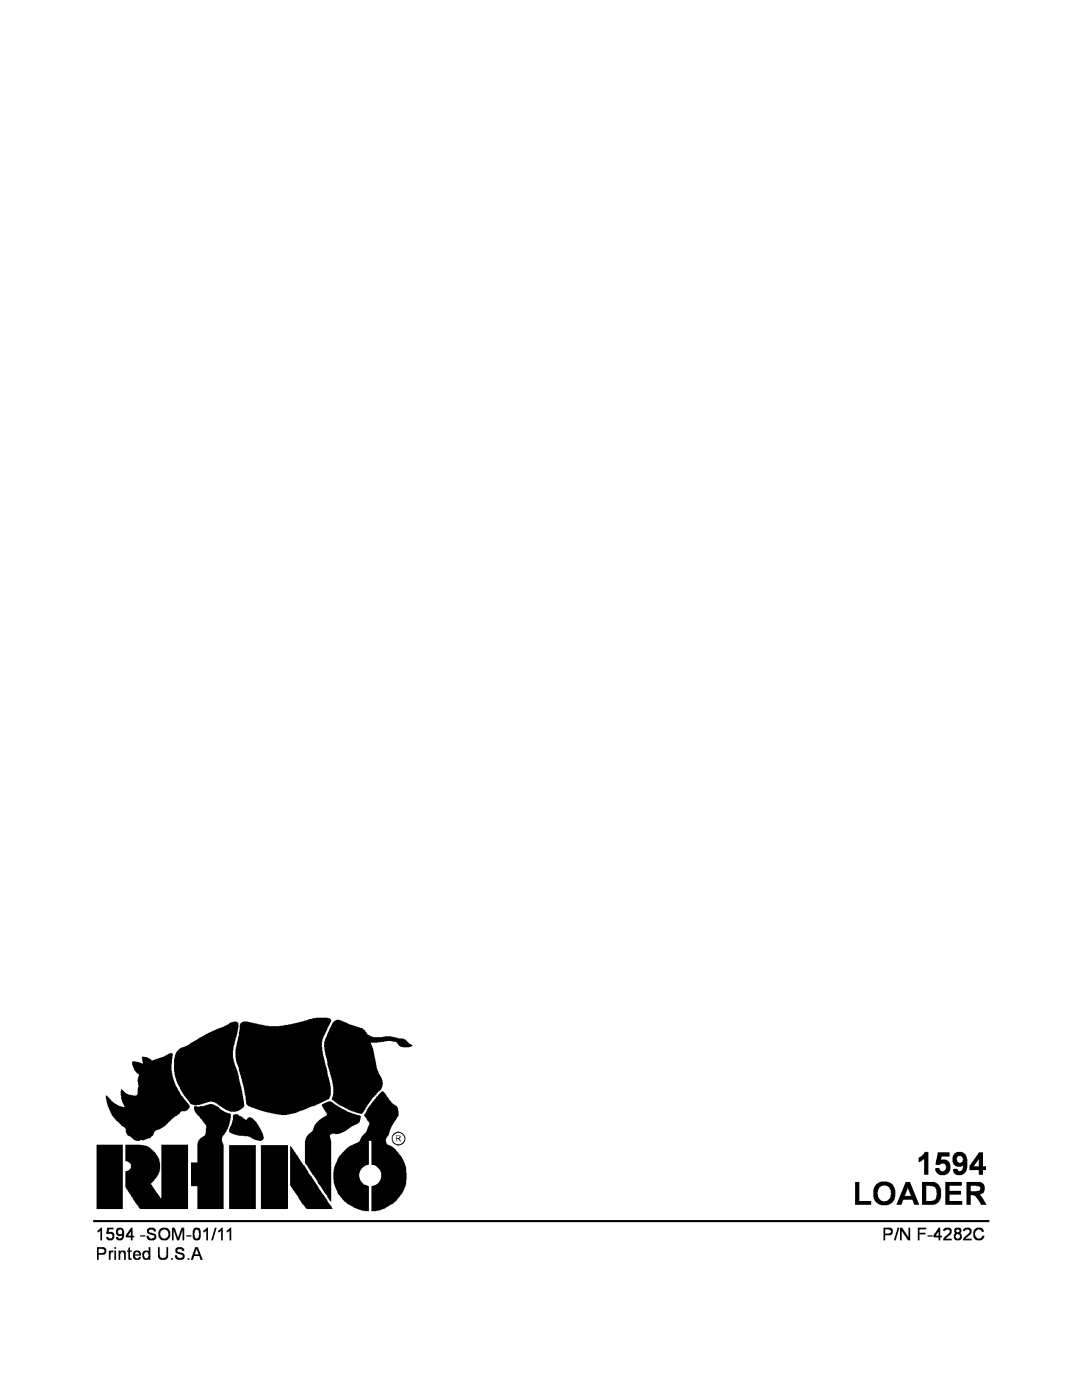 Rhino Mounts 1594 manual Loader, SOM-01/11, P/N F-4282C, Printed U.S.A 